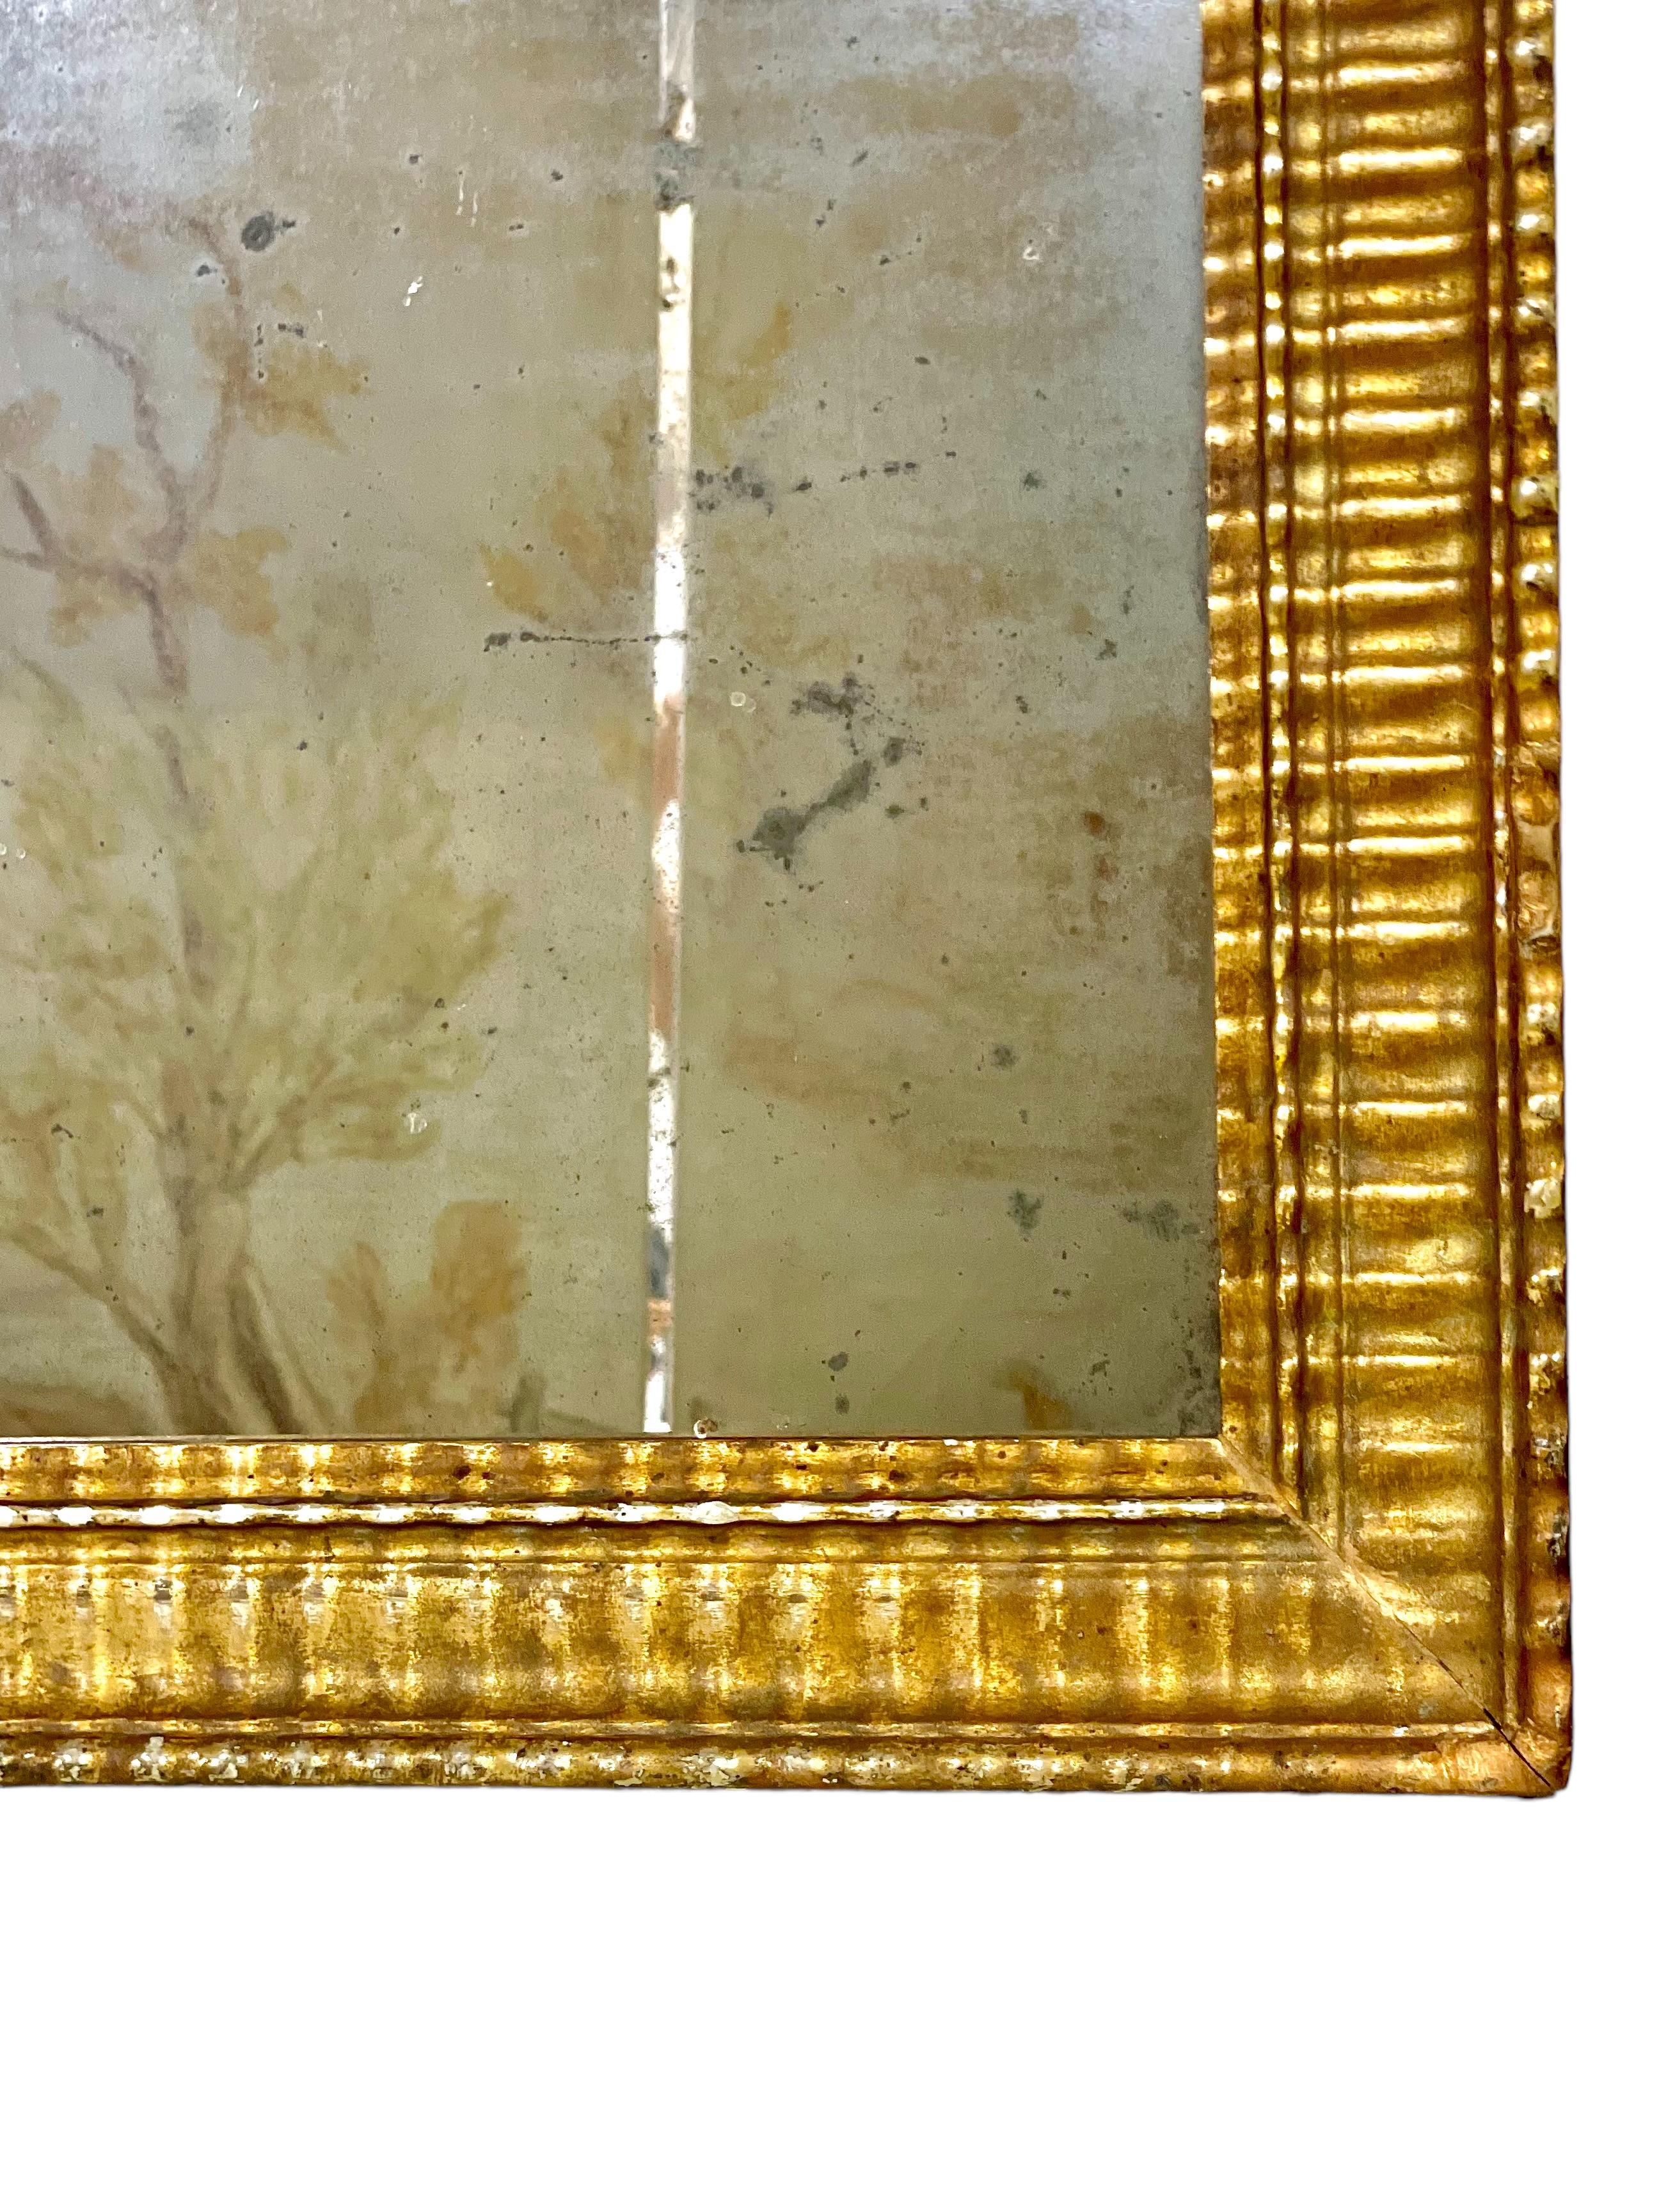 Un très beau miroir rectangulaire Louis Philippe dans un magnifique cadre en bois doré, qui a été sculpté sur tout le pourtour dans un style simple mais attrayant de nervures ou de cannelures. Datant du milieu du XIXe siècle, ce fabuleux miroir